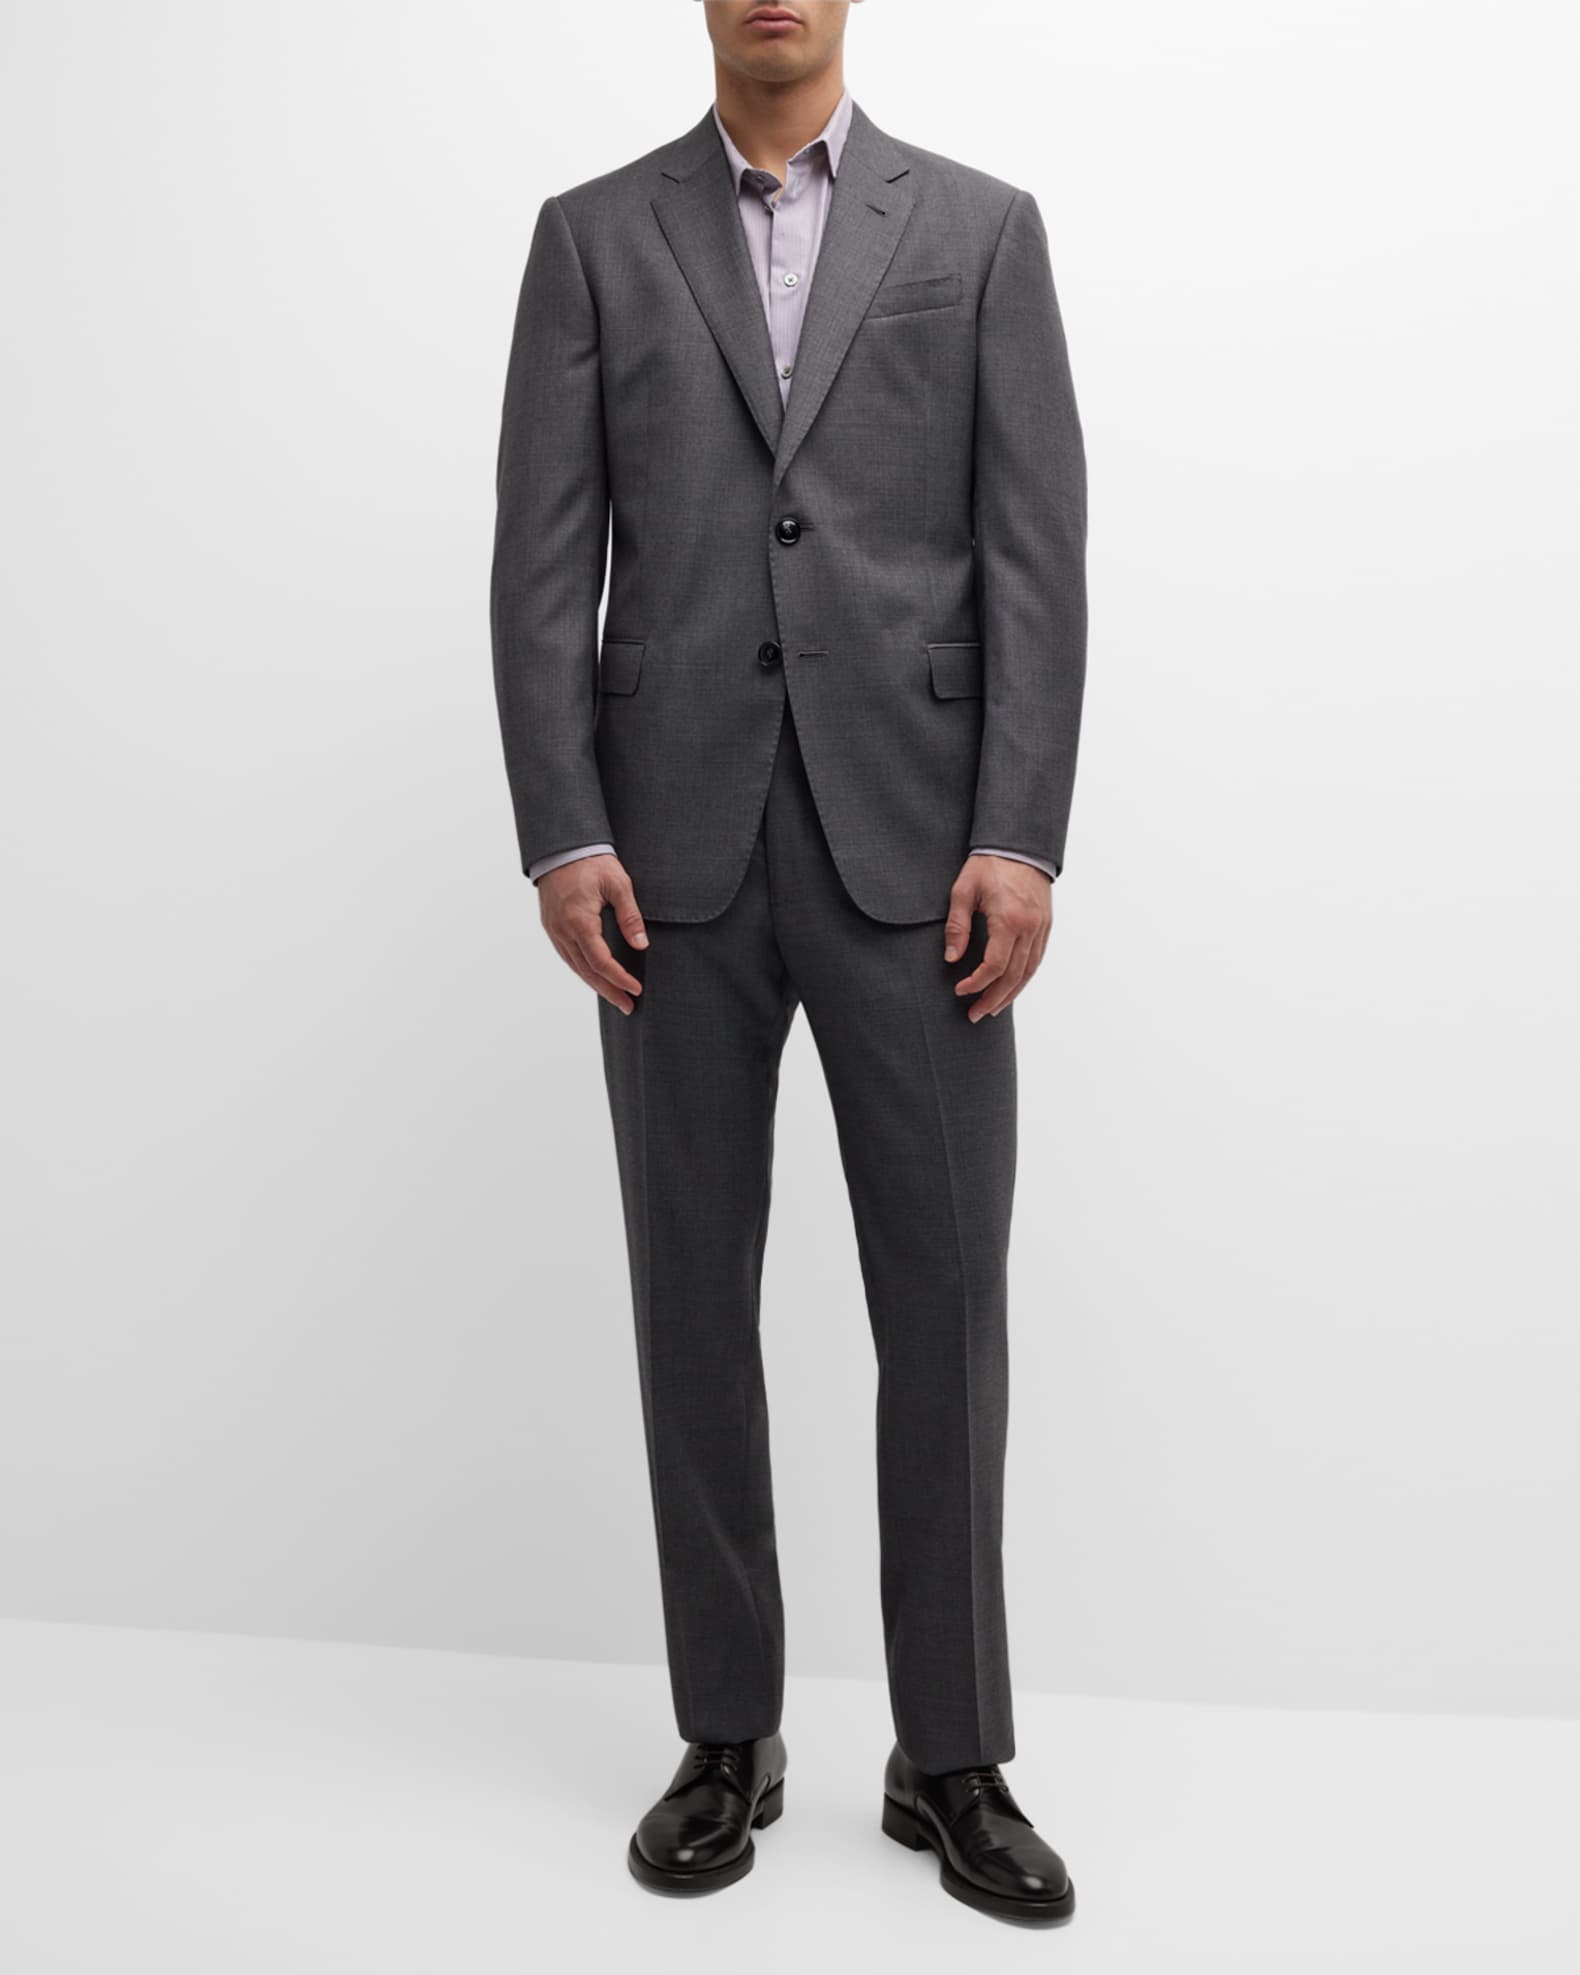 Giorgio Armani Men's Textured Wool Suit | Neiman Marcus